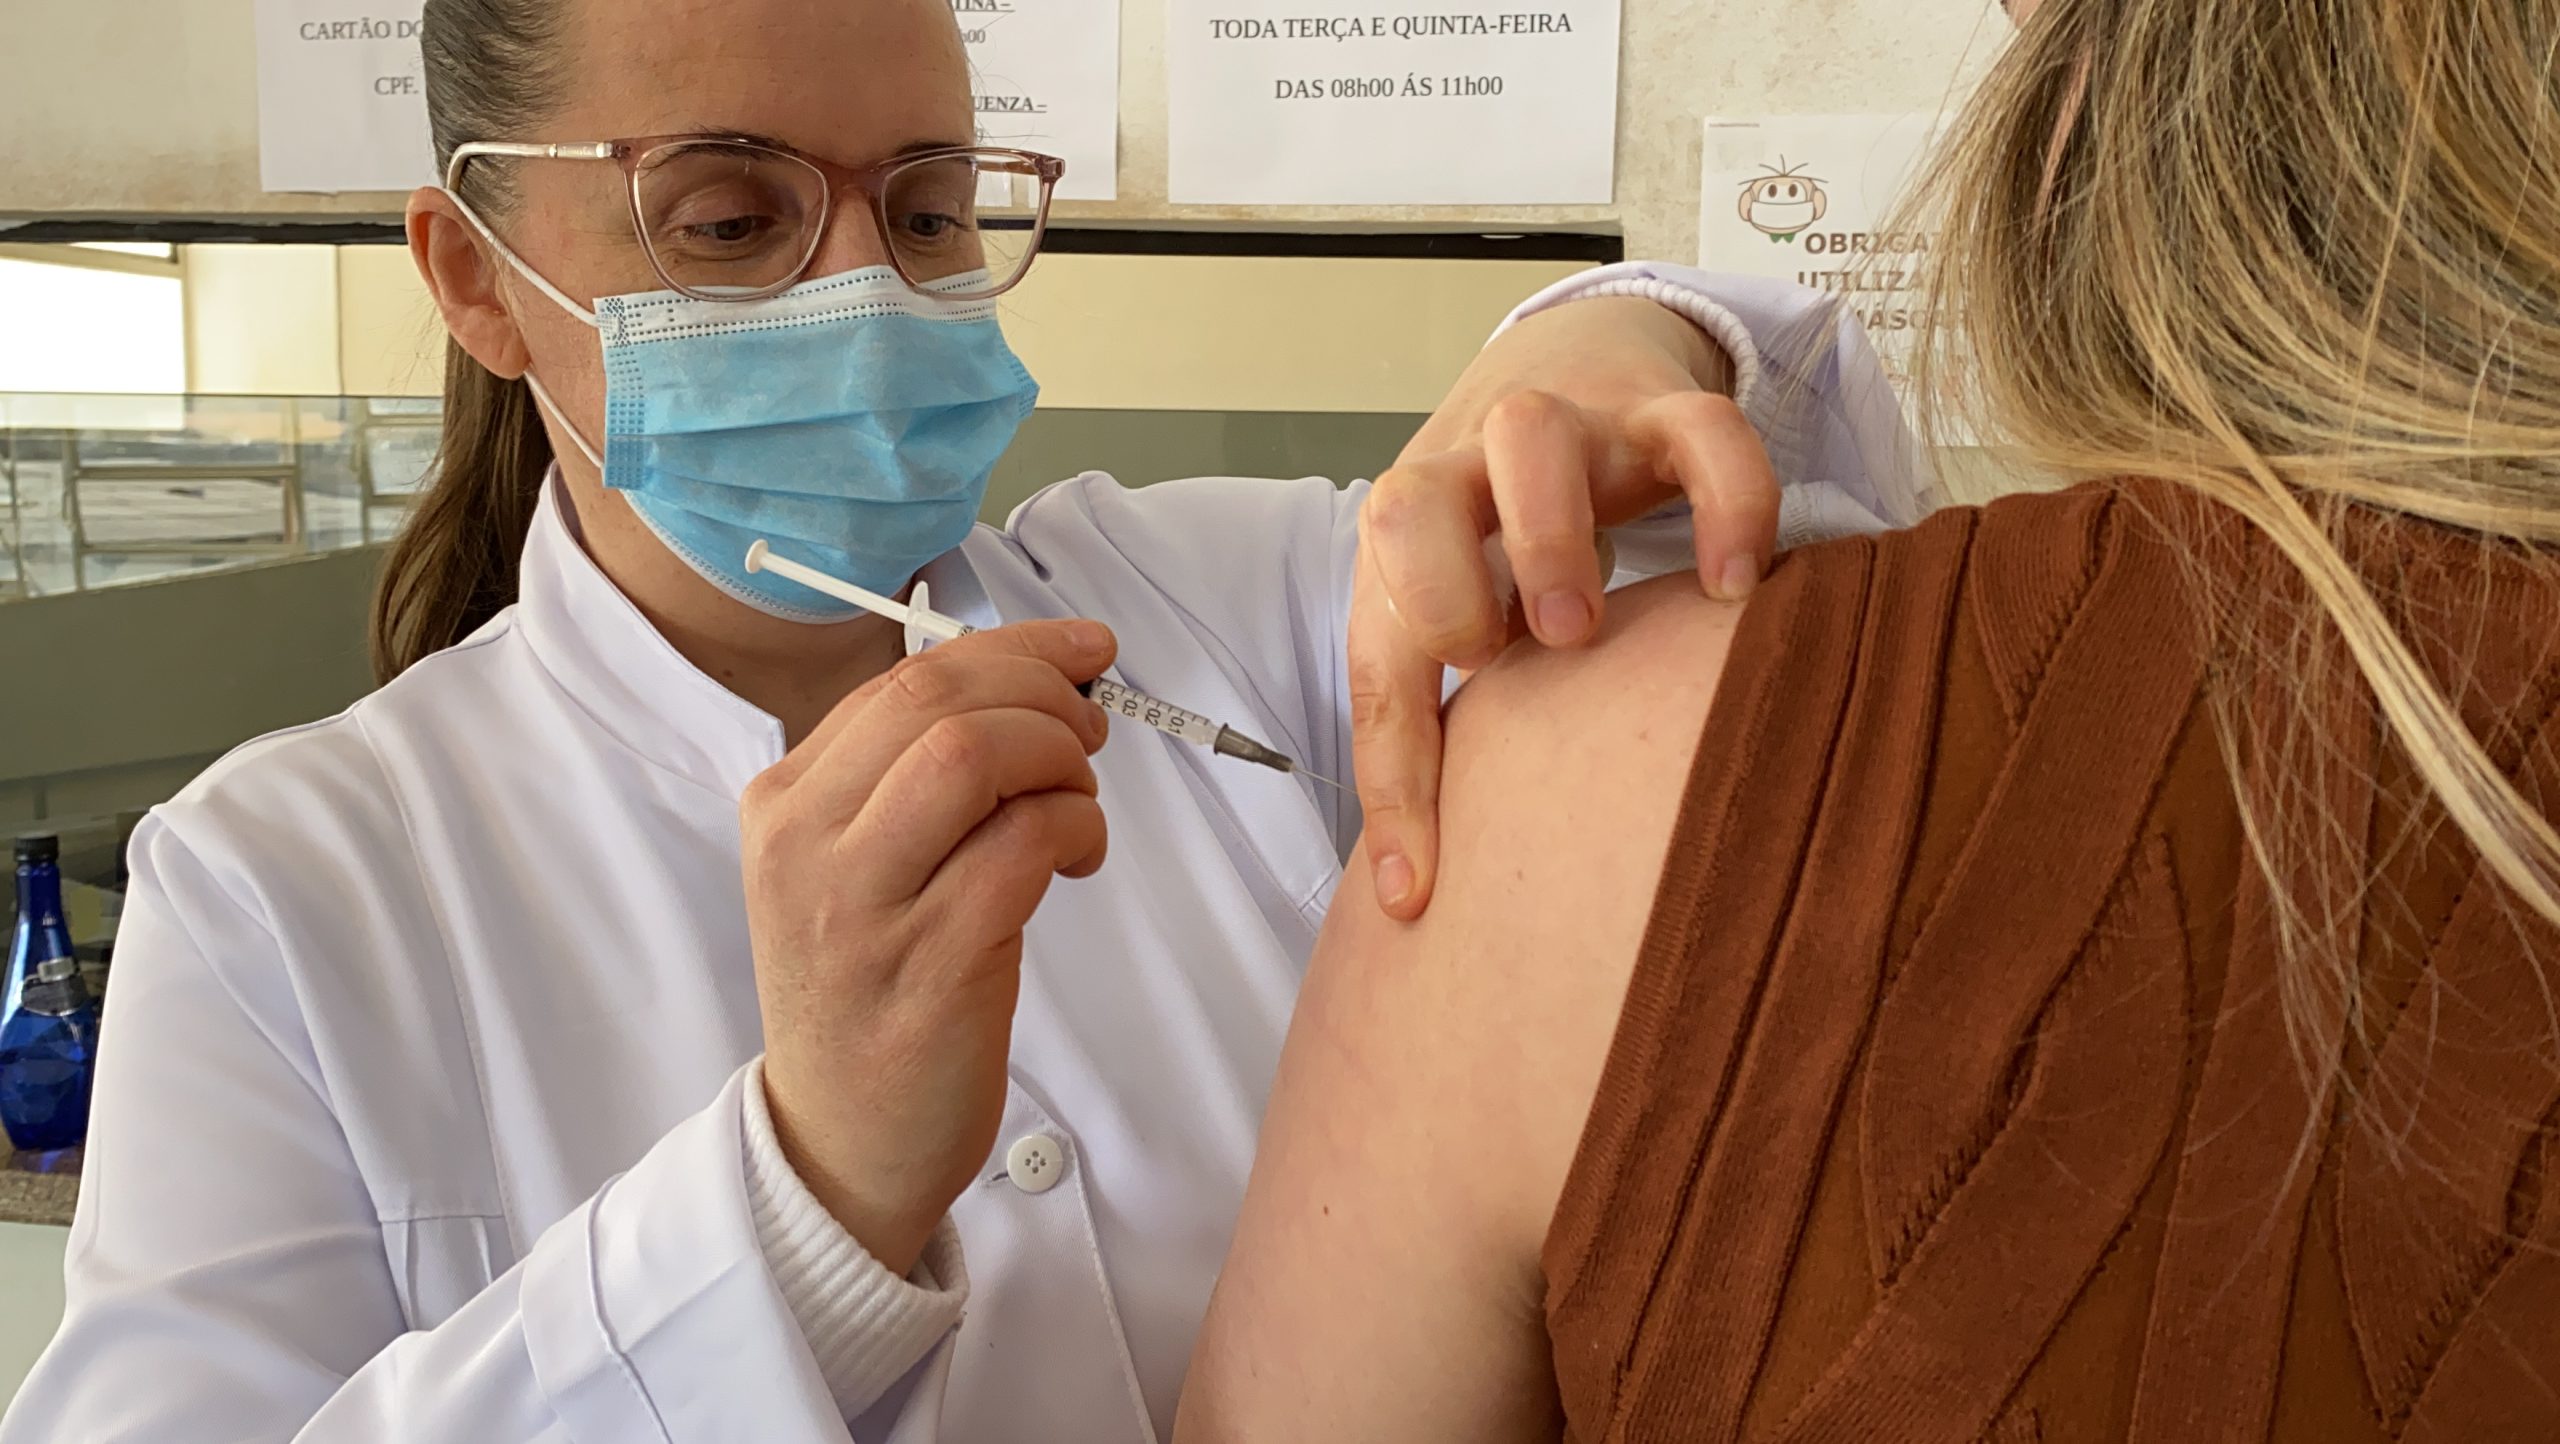 Prefeitura de Itararé (SP) divulga datas da dose de reforço para vacinados até 31 de julho